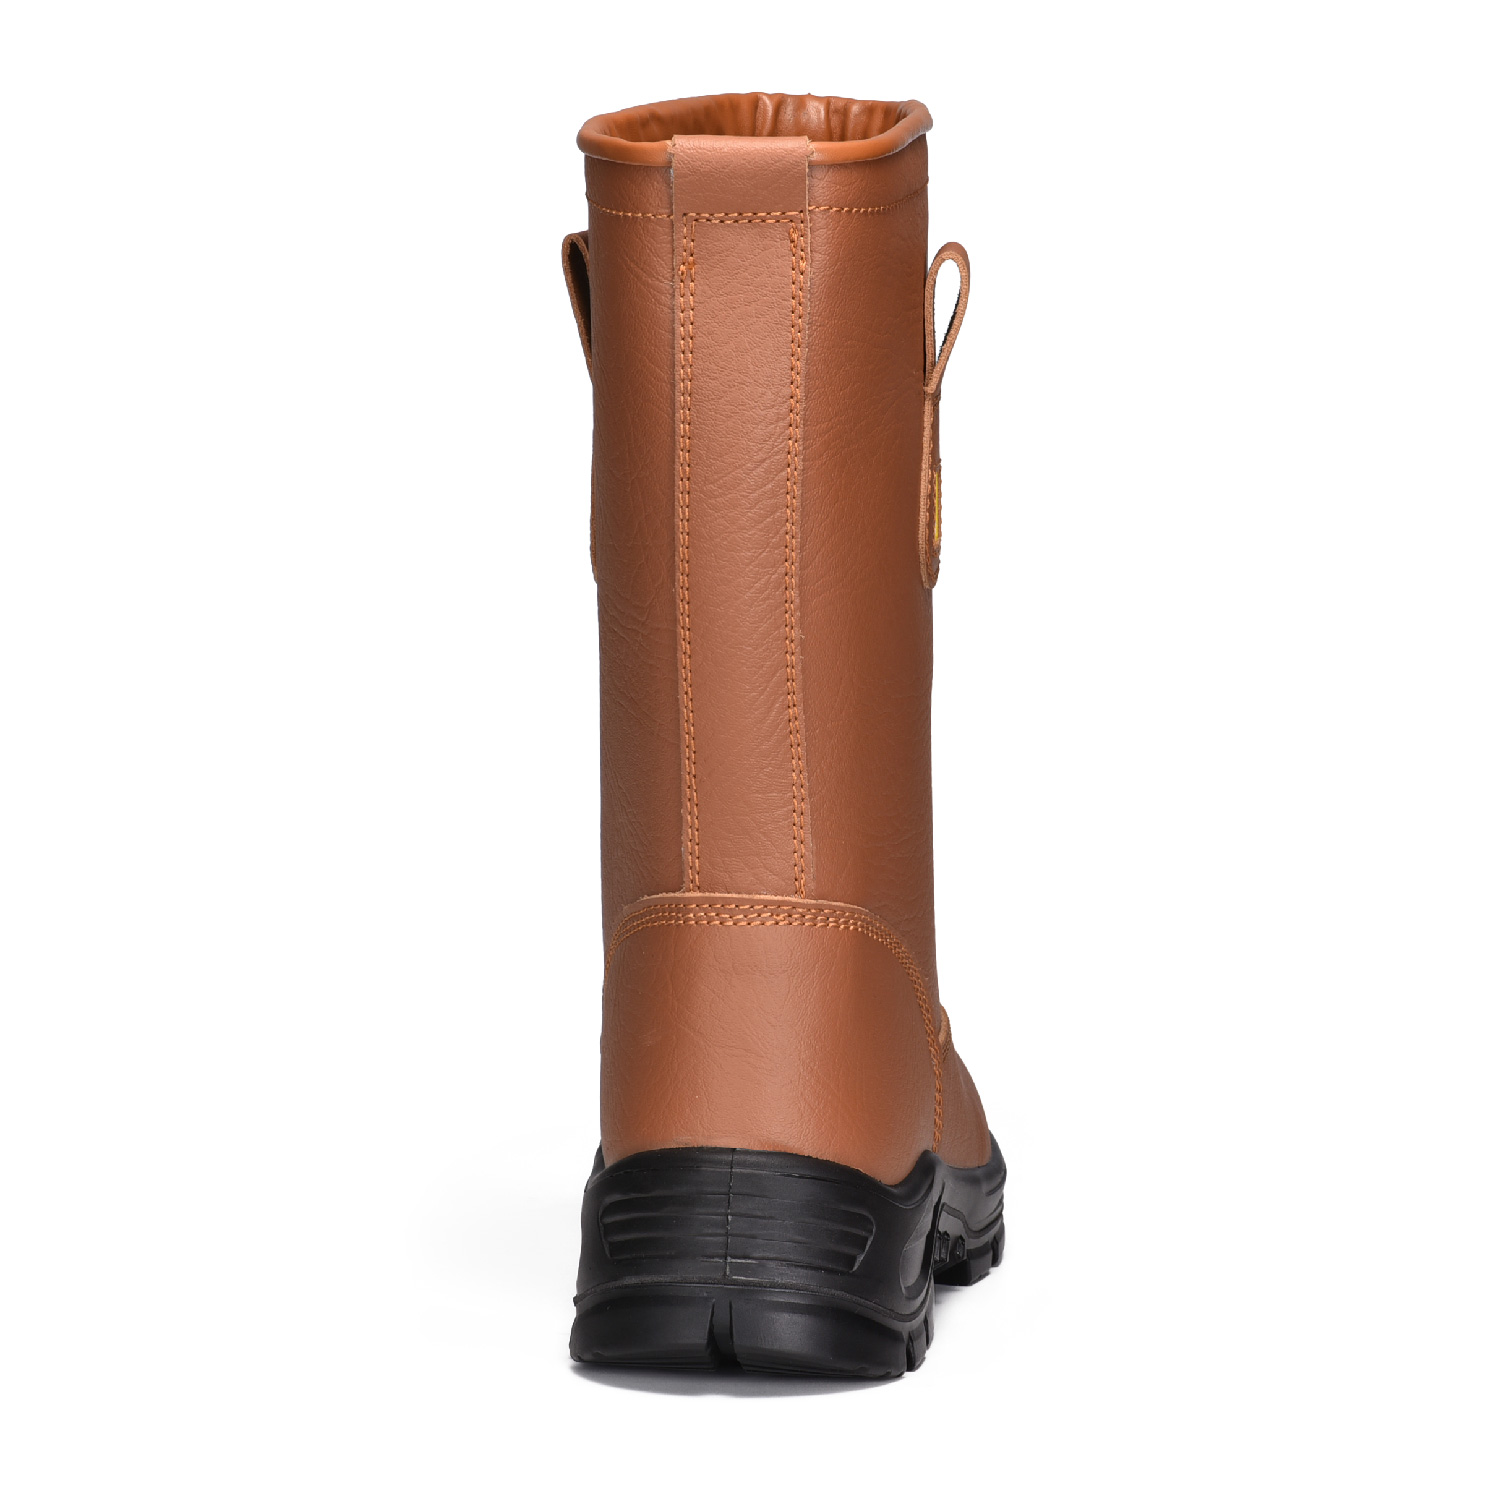 Botas de seguridad Buliders con punta de acero Zapatos de seguridad marrones aprobados por la CE-H-9430 Marrón